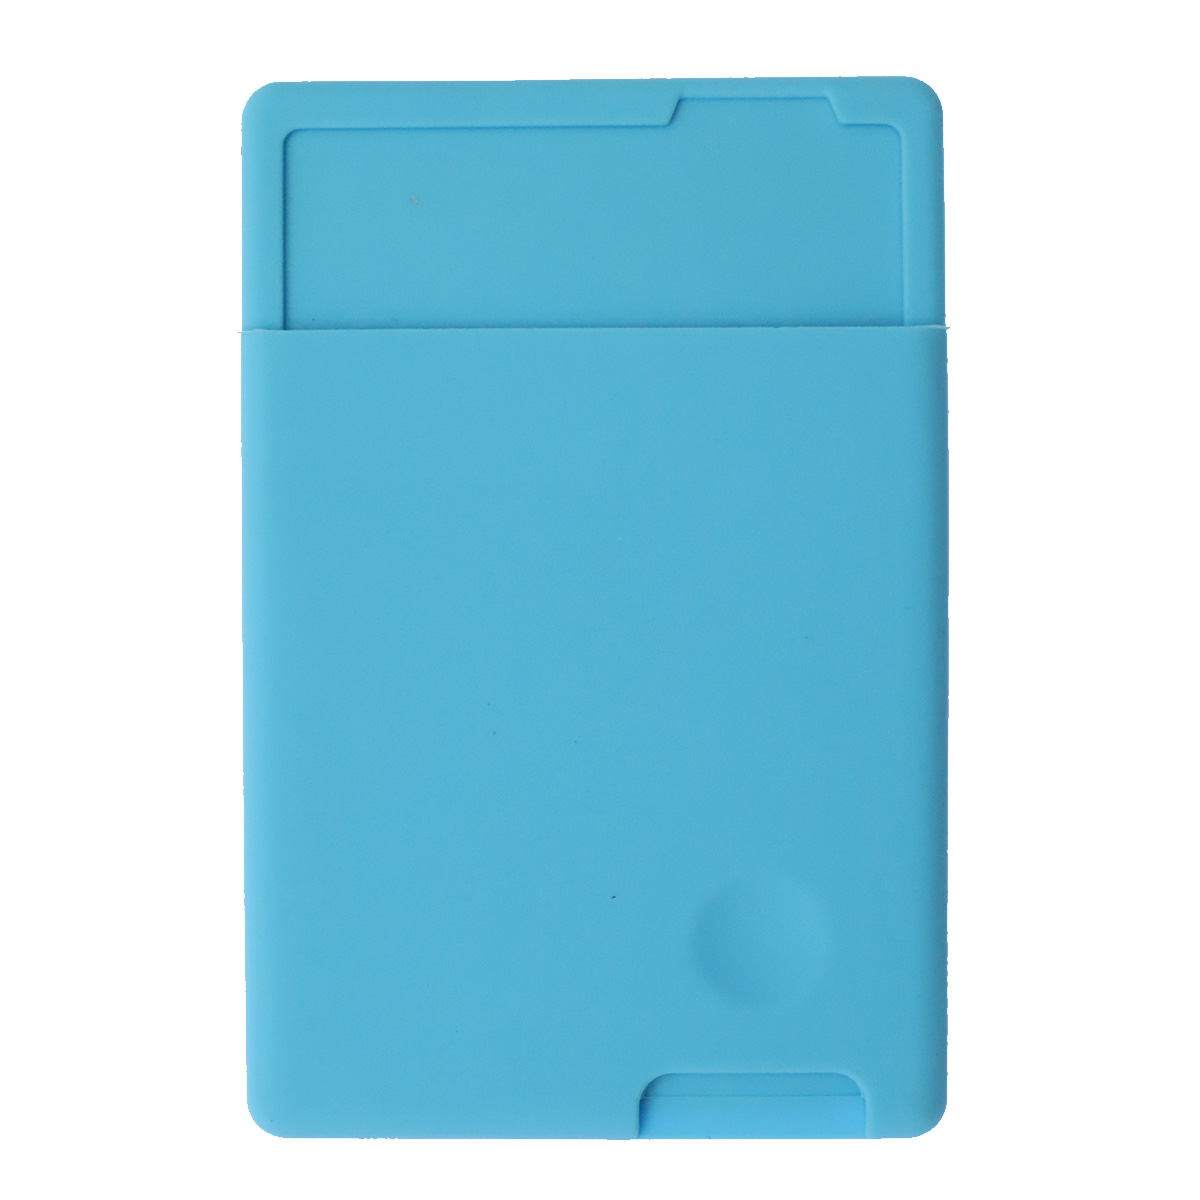 Чехол картхолдер с клеящейся оборотной стороной на смартфон для банковских карт, силикон, цвет голубой